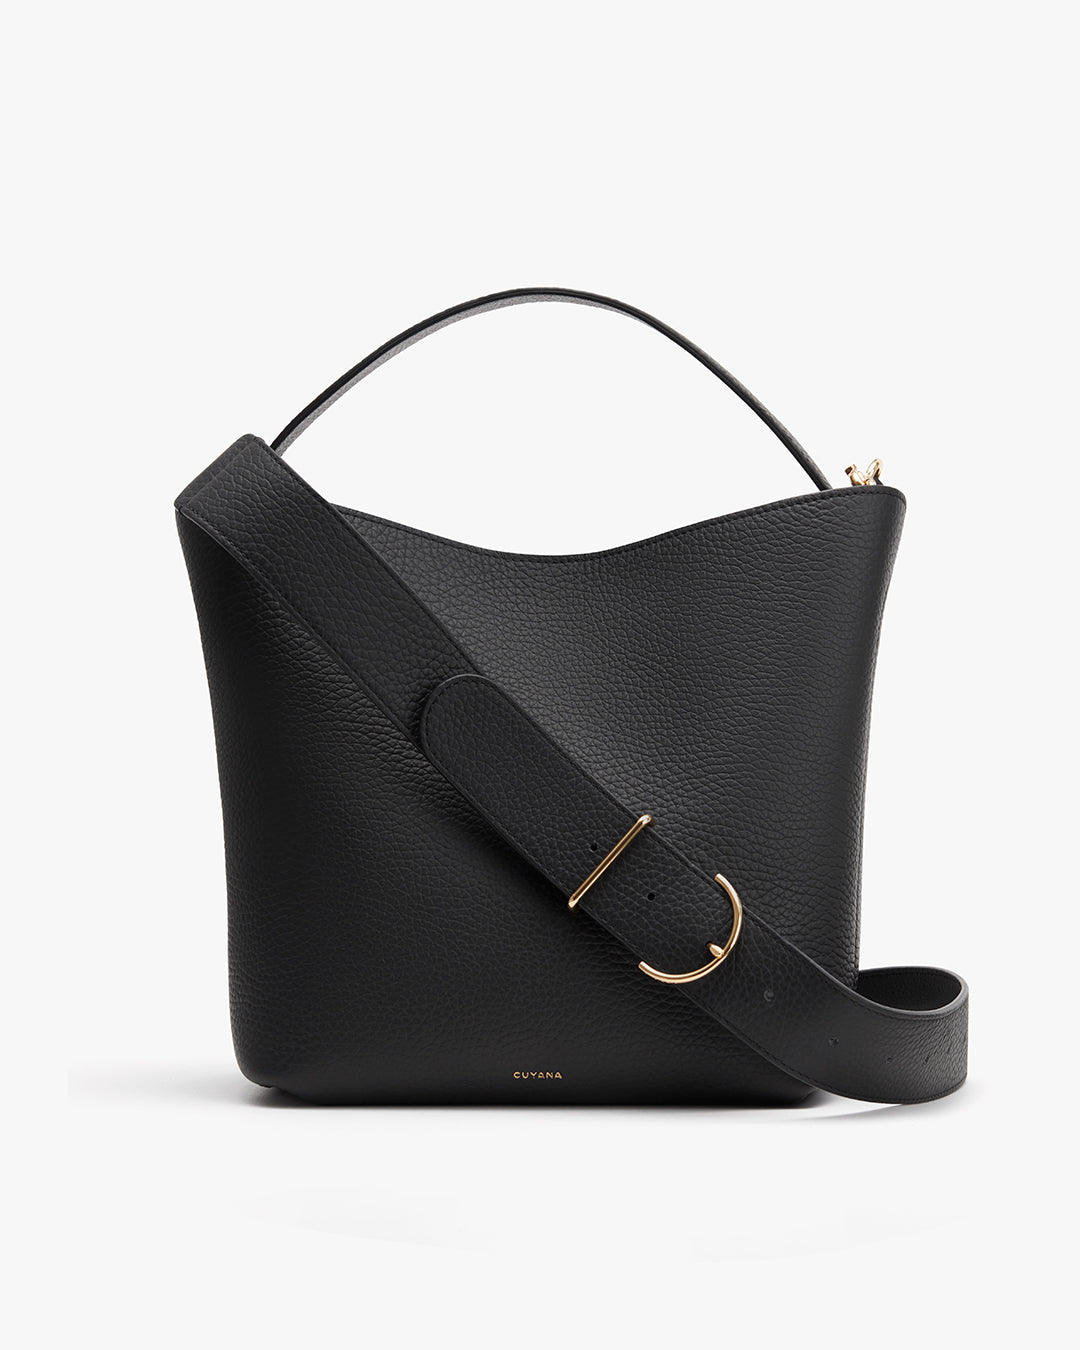 Louis Vuitton, men's business shoulder bag, black textur…